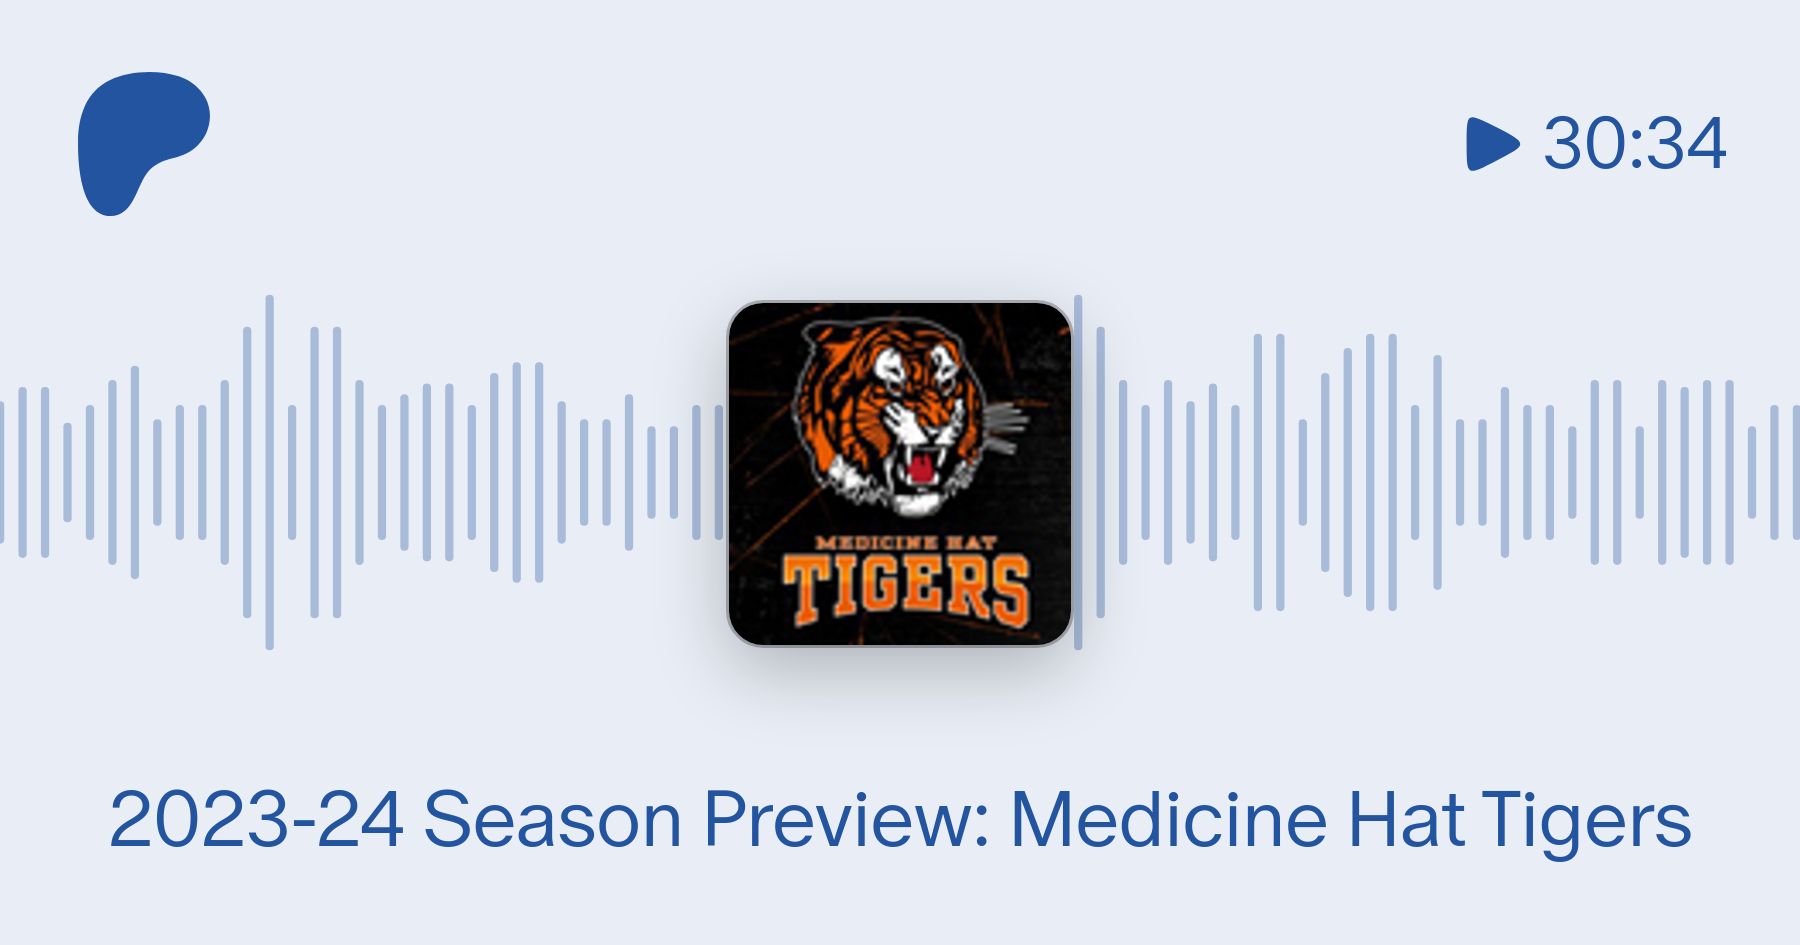 2023-24 Season Preview - Medicine Hat Tigers - Medicine Hat Tigers